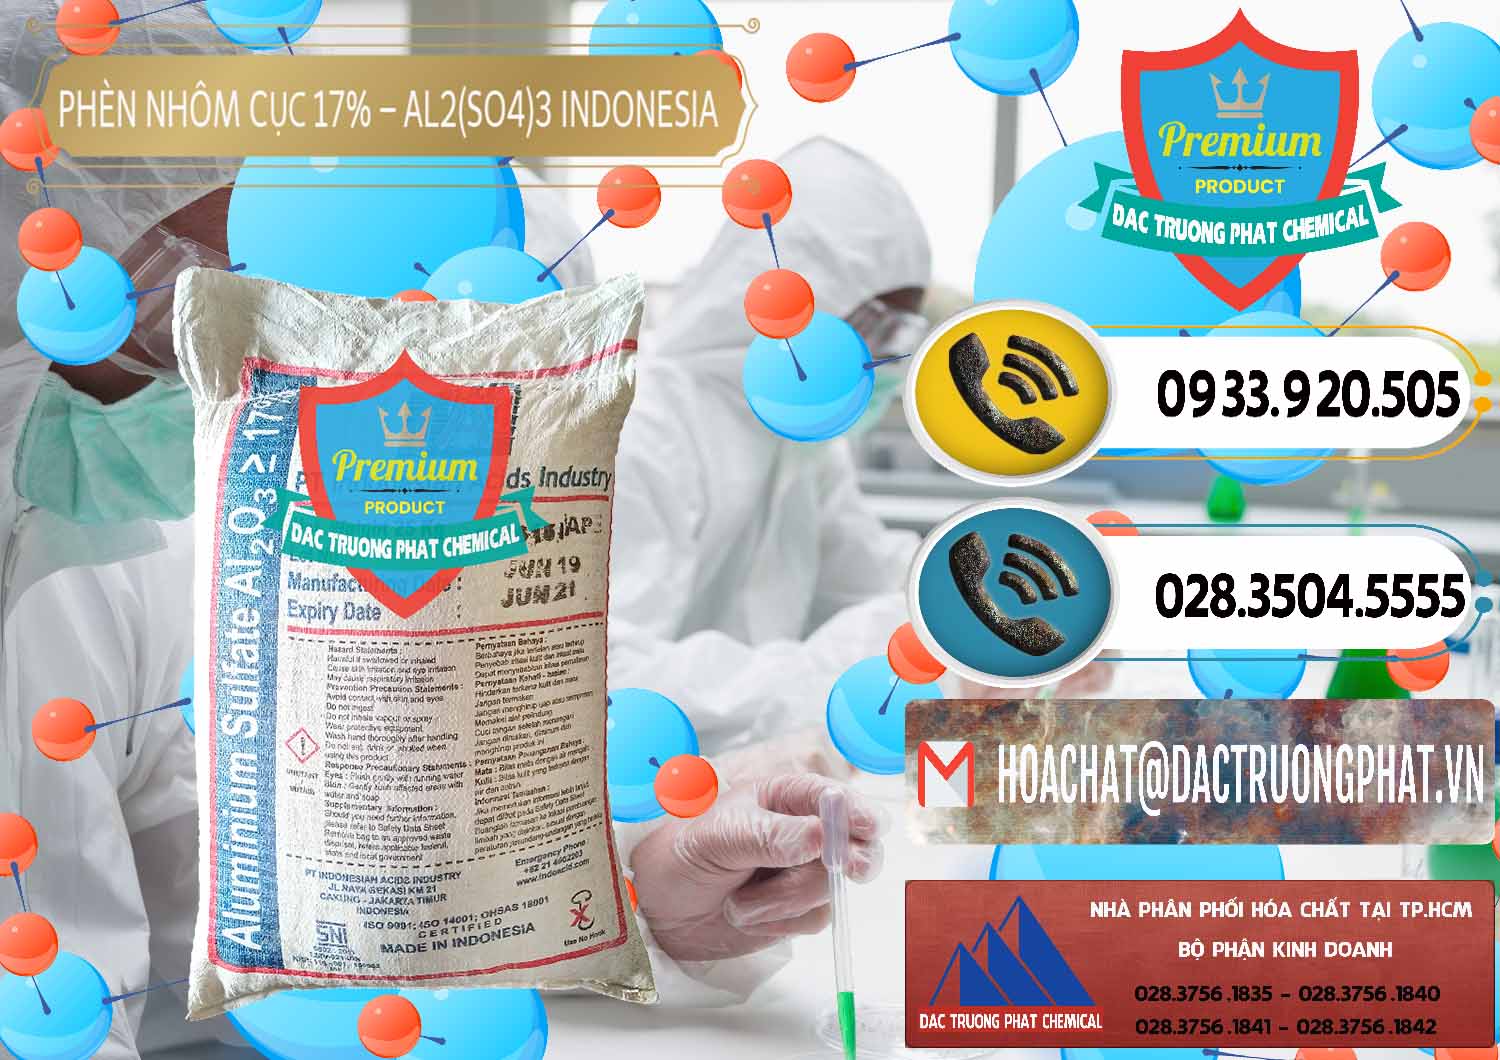 Công ty nhập khẩu & bán Phèn Nhôm Cục - Al2(SO4)3 17% bao 25kg Indonesia - 0115 - Cty kinh doanh và cung cấp hóa chất tại TP.HCM - hoachatdetnhuom.vn